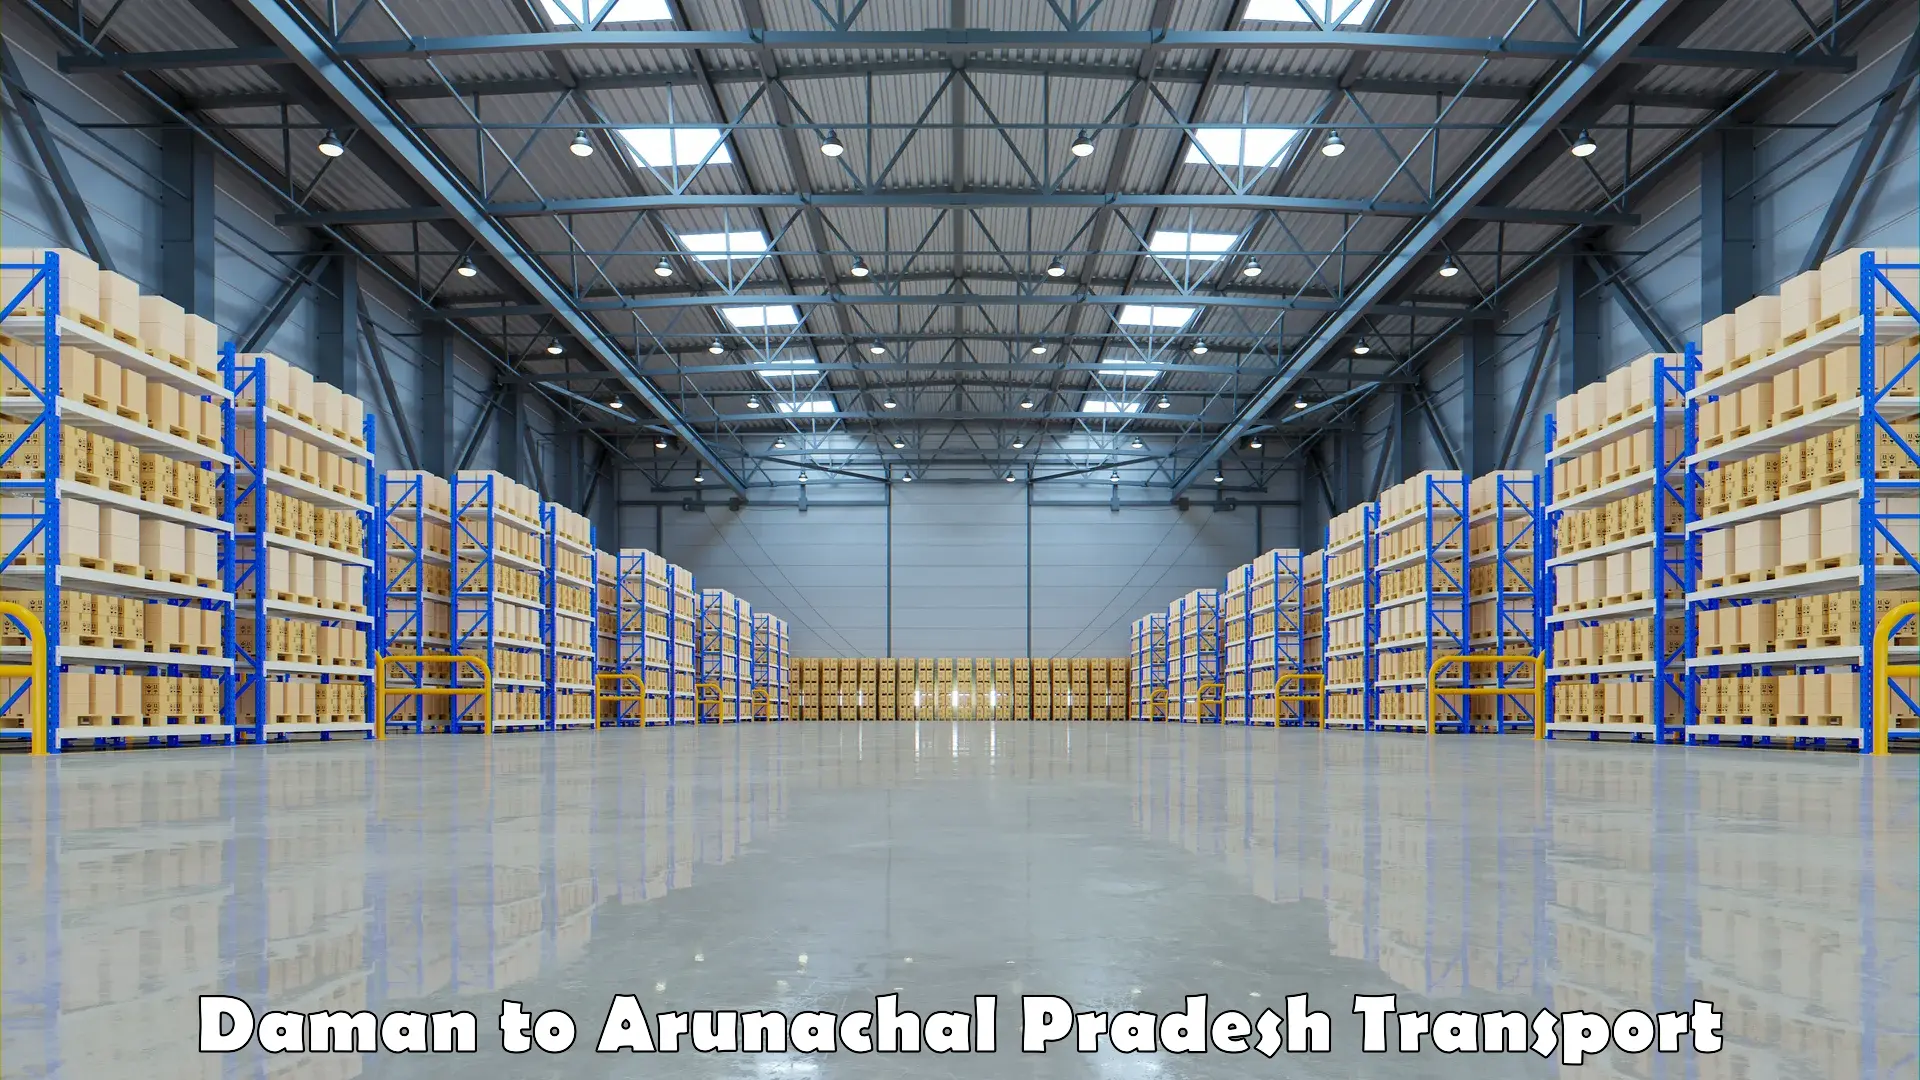 Interstate transport services Daman to Arunachal Pradesh